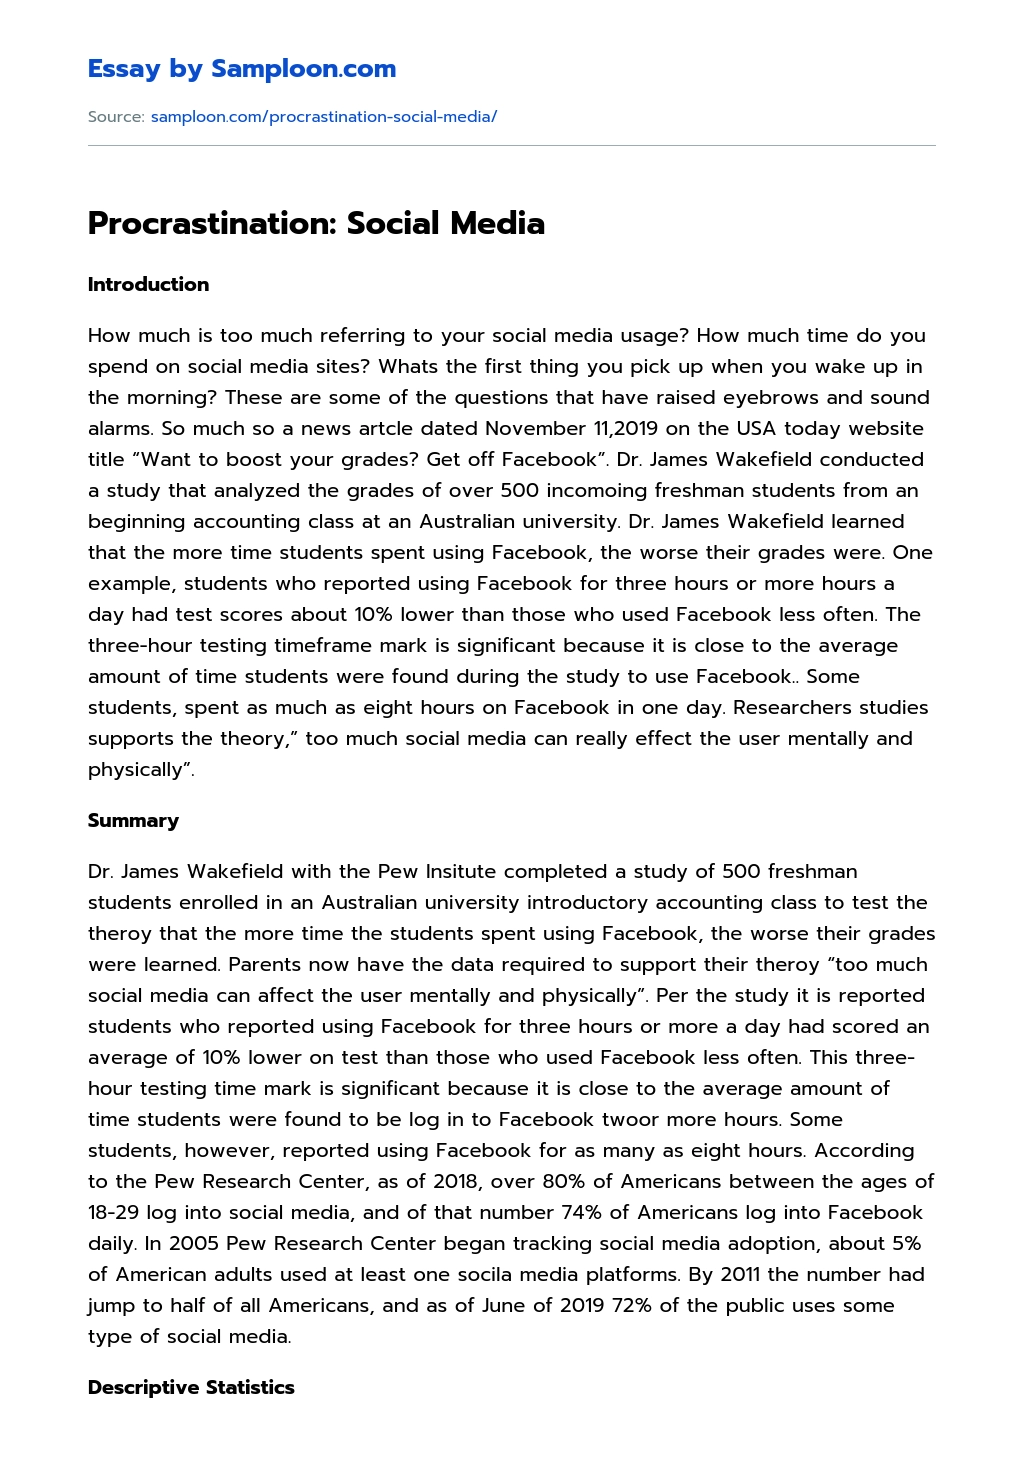 Procrastination: Social Media Research Paper essay